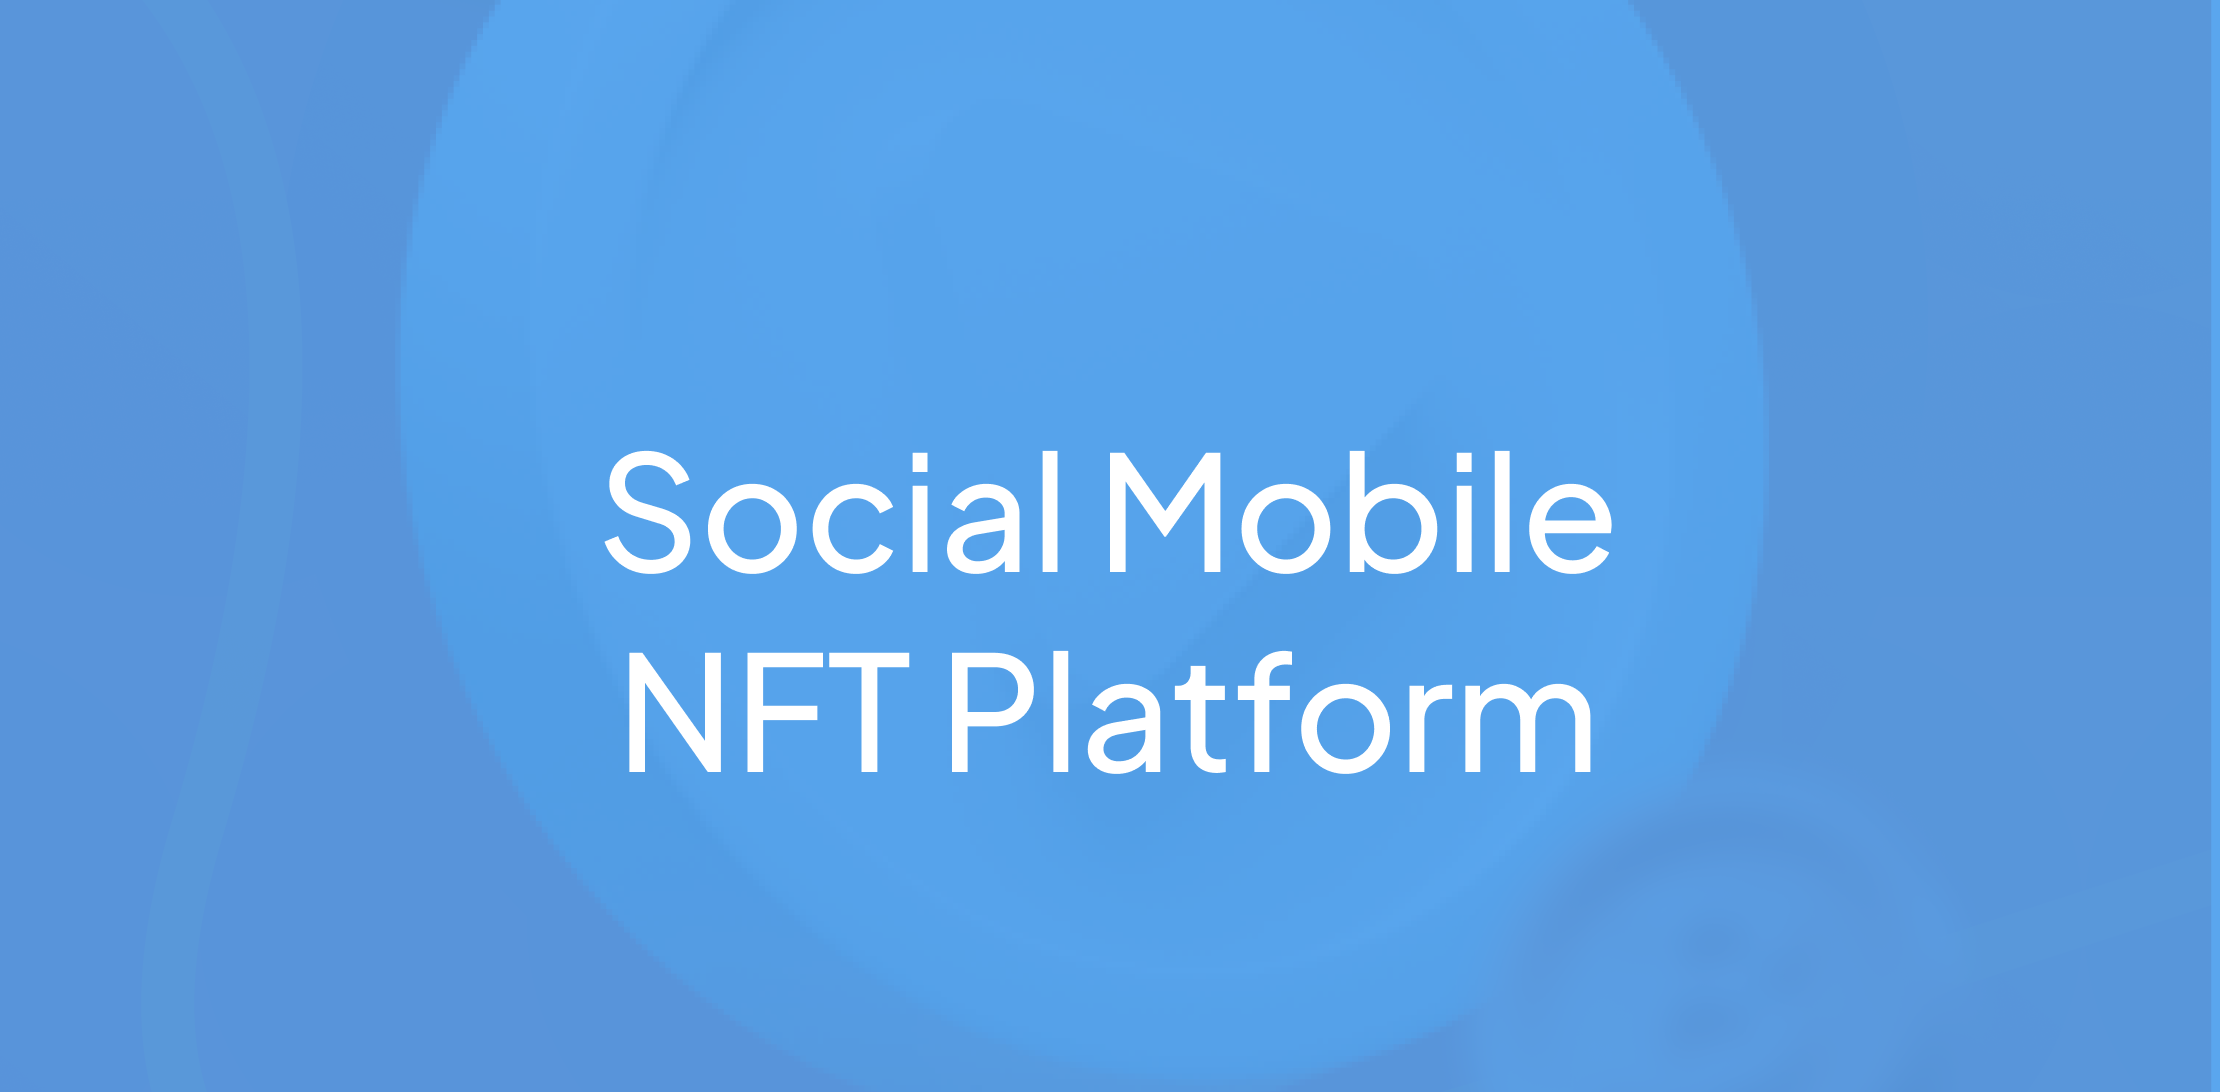 Social mobile NFT platform